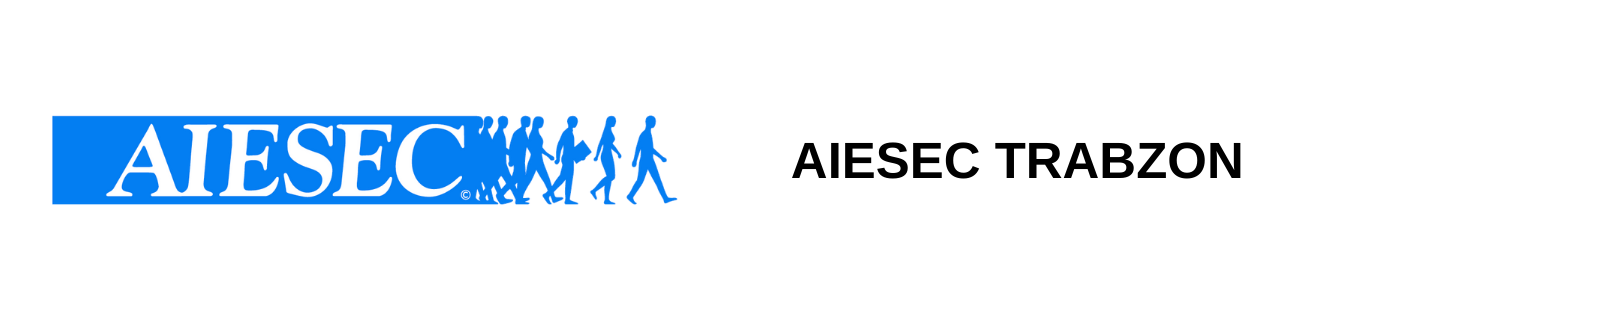 AIESEC(TÜRKİYE İKTİSADİ ve TİCARİ İLİMLER TALEBELERİ STAJ KOMİTESİ DERNEĞİ)